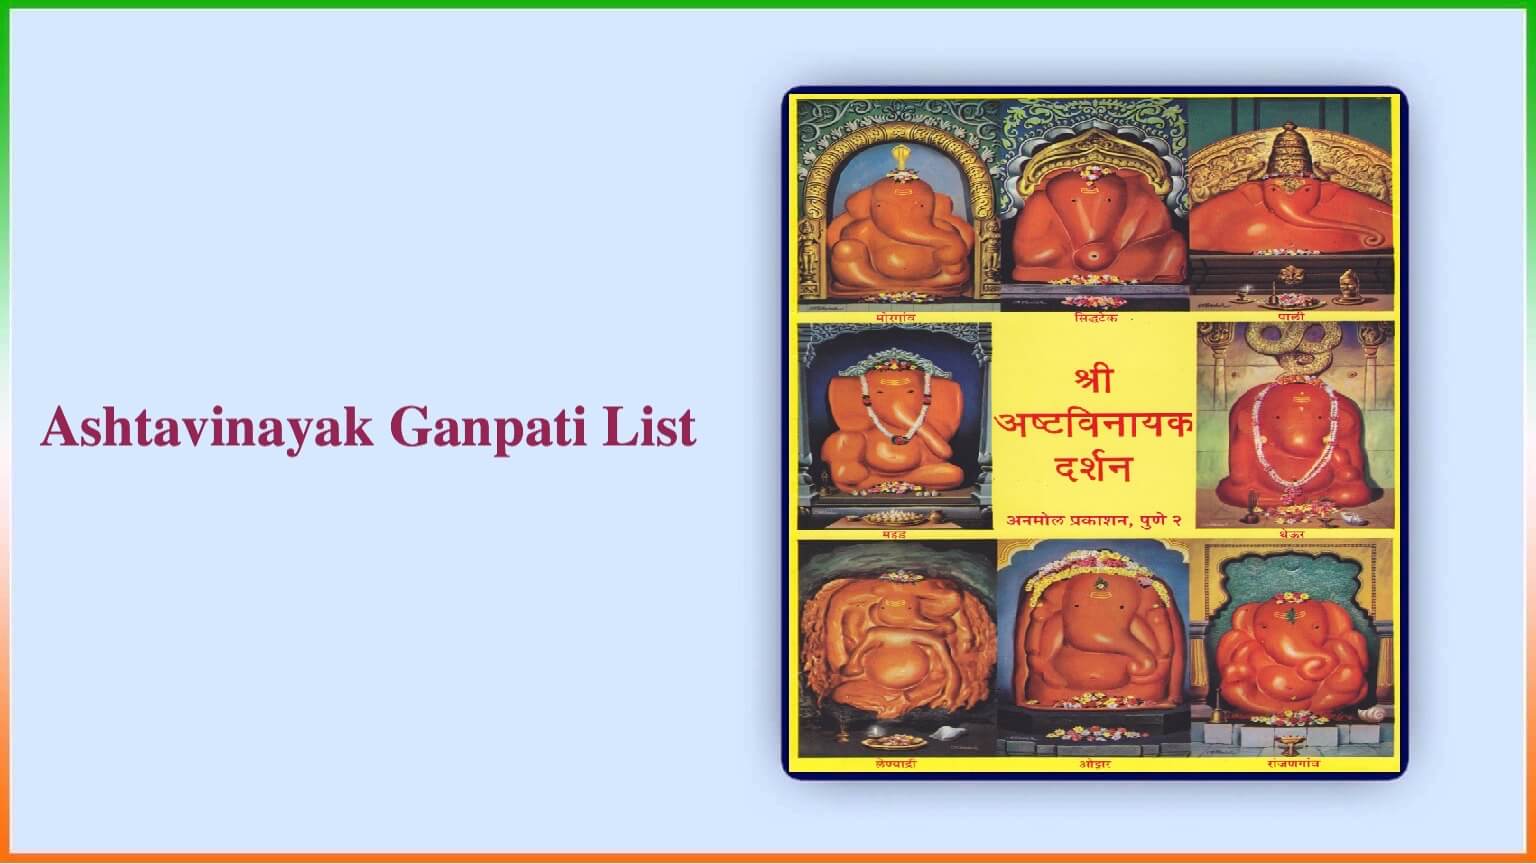 Ashtavinayak Ganpati List